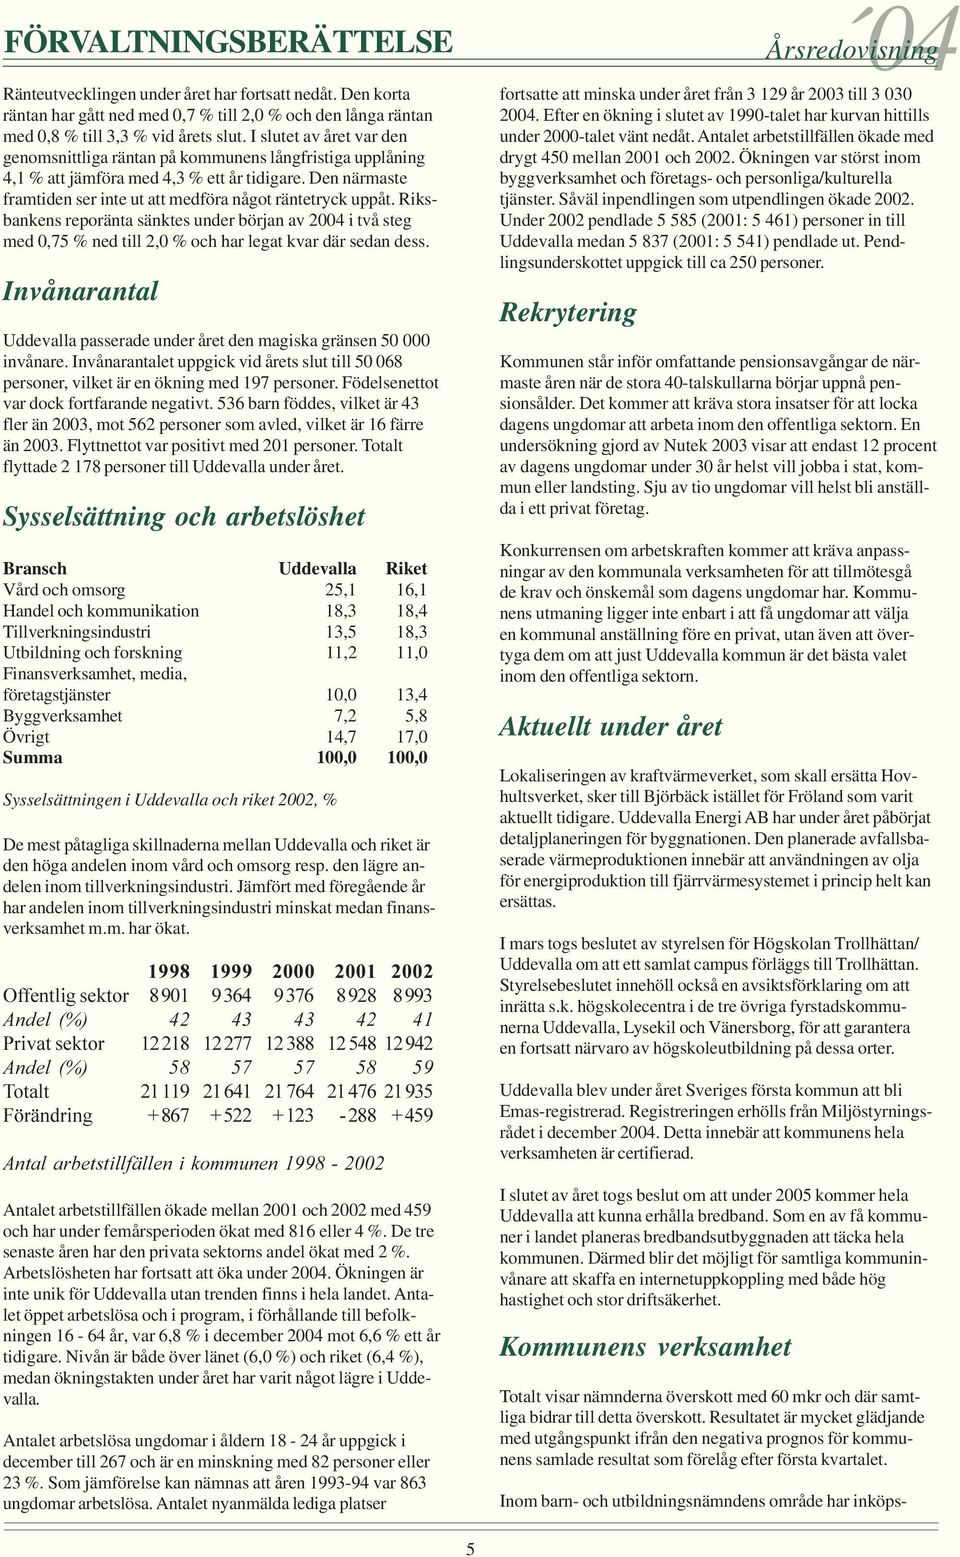 Riksbankens reporänta sänktes under början av 2004 i två steg med 0,75 % ned till 2,0 % och har legat kvar där sedan dess.